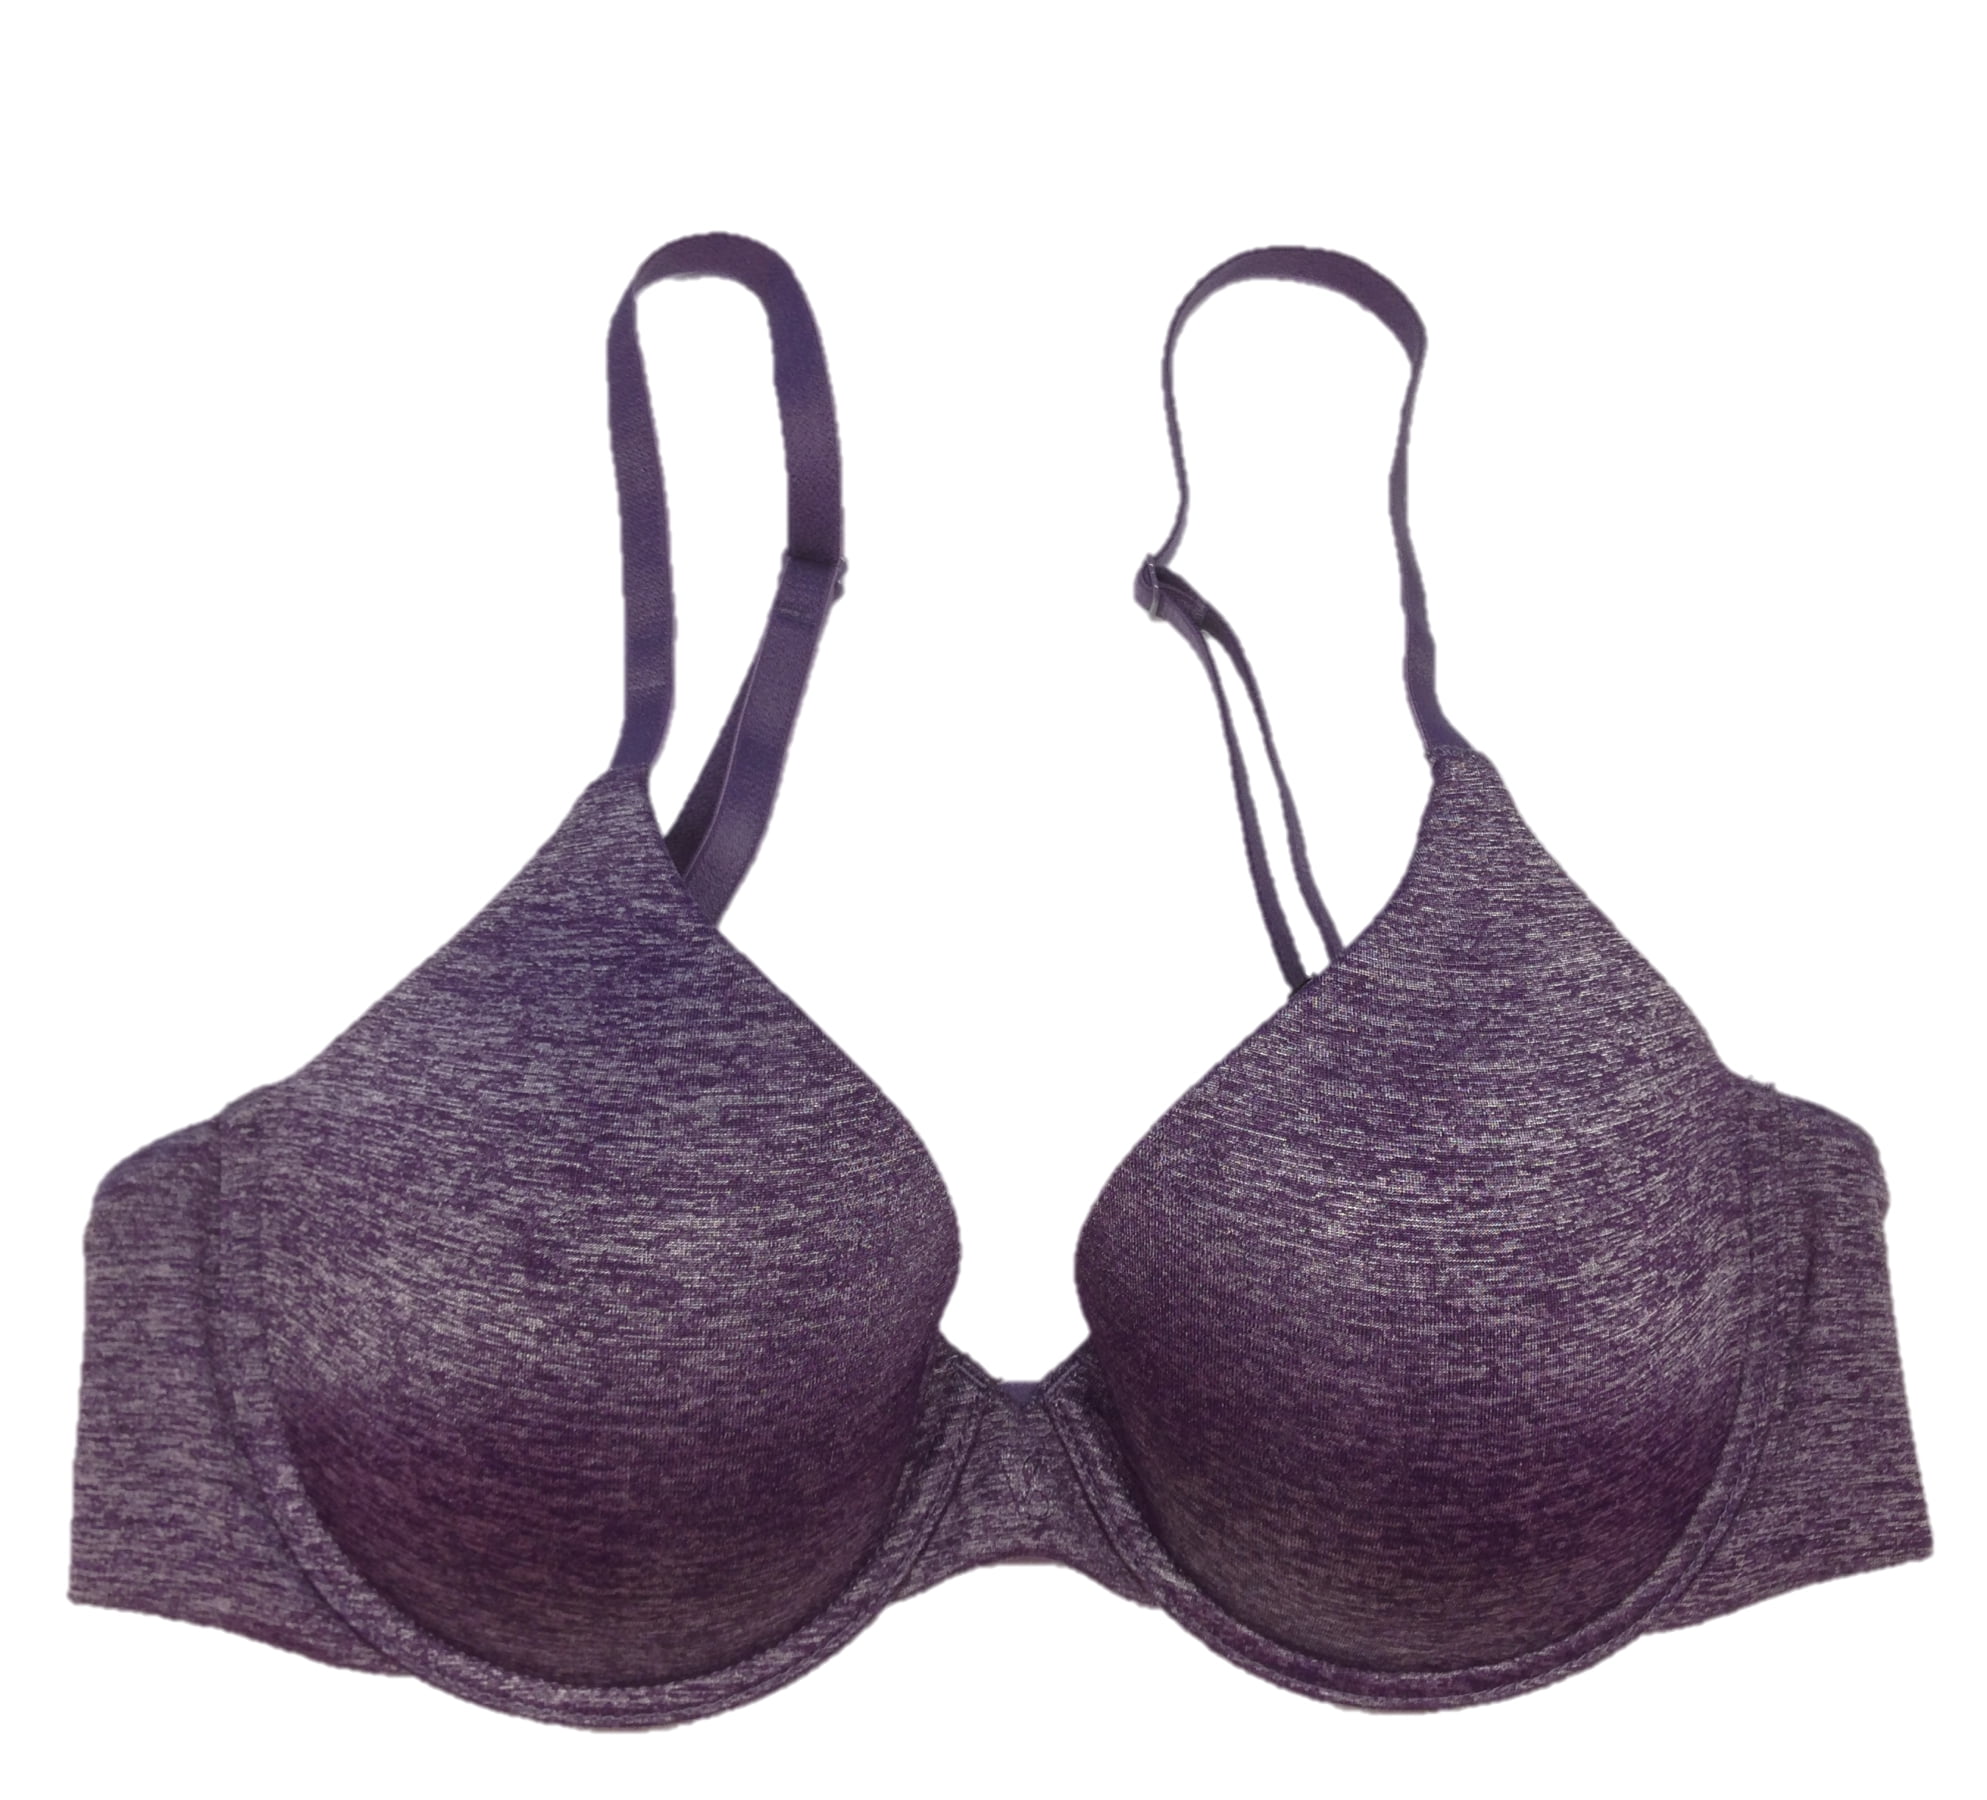 Victoria's Secret VS Uplift Semi Demi Blue/ Purple Bra Blue Size 32 B - $12  (72% Off Retail) - From Yadira